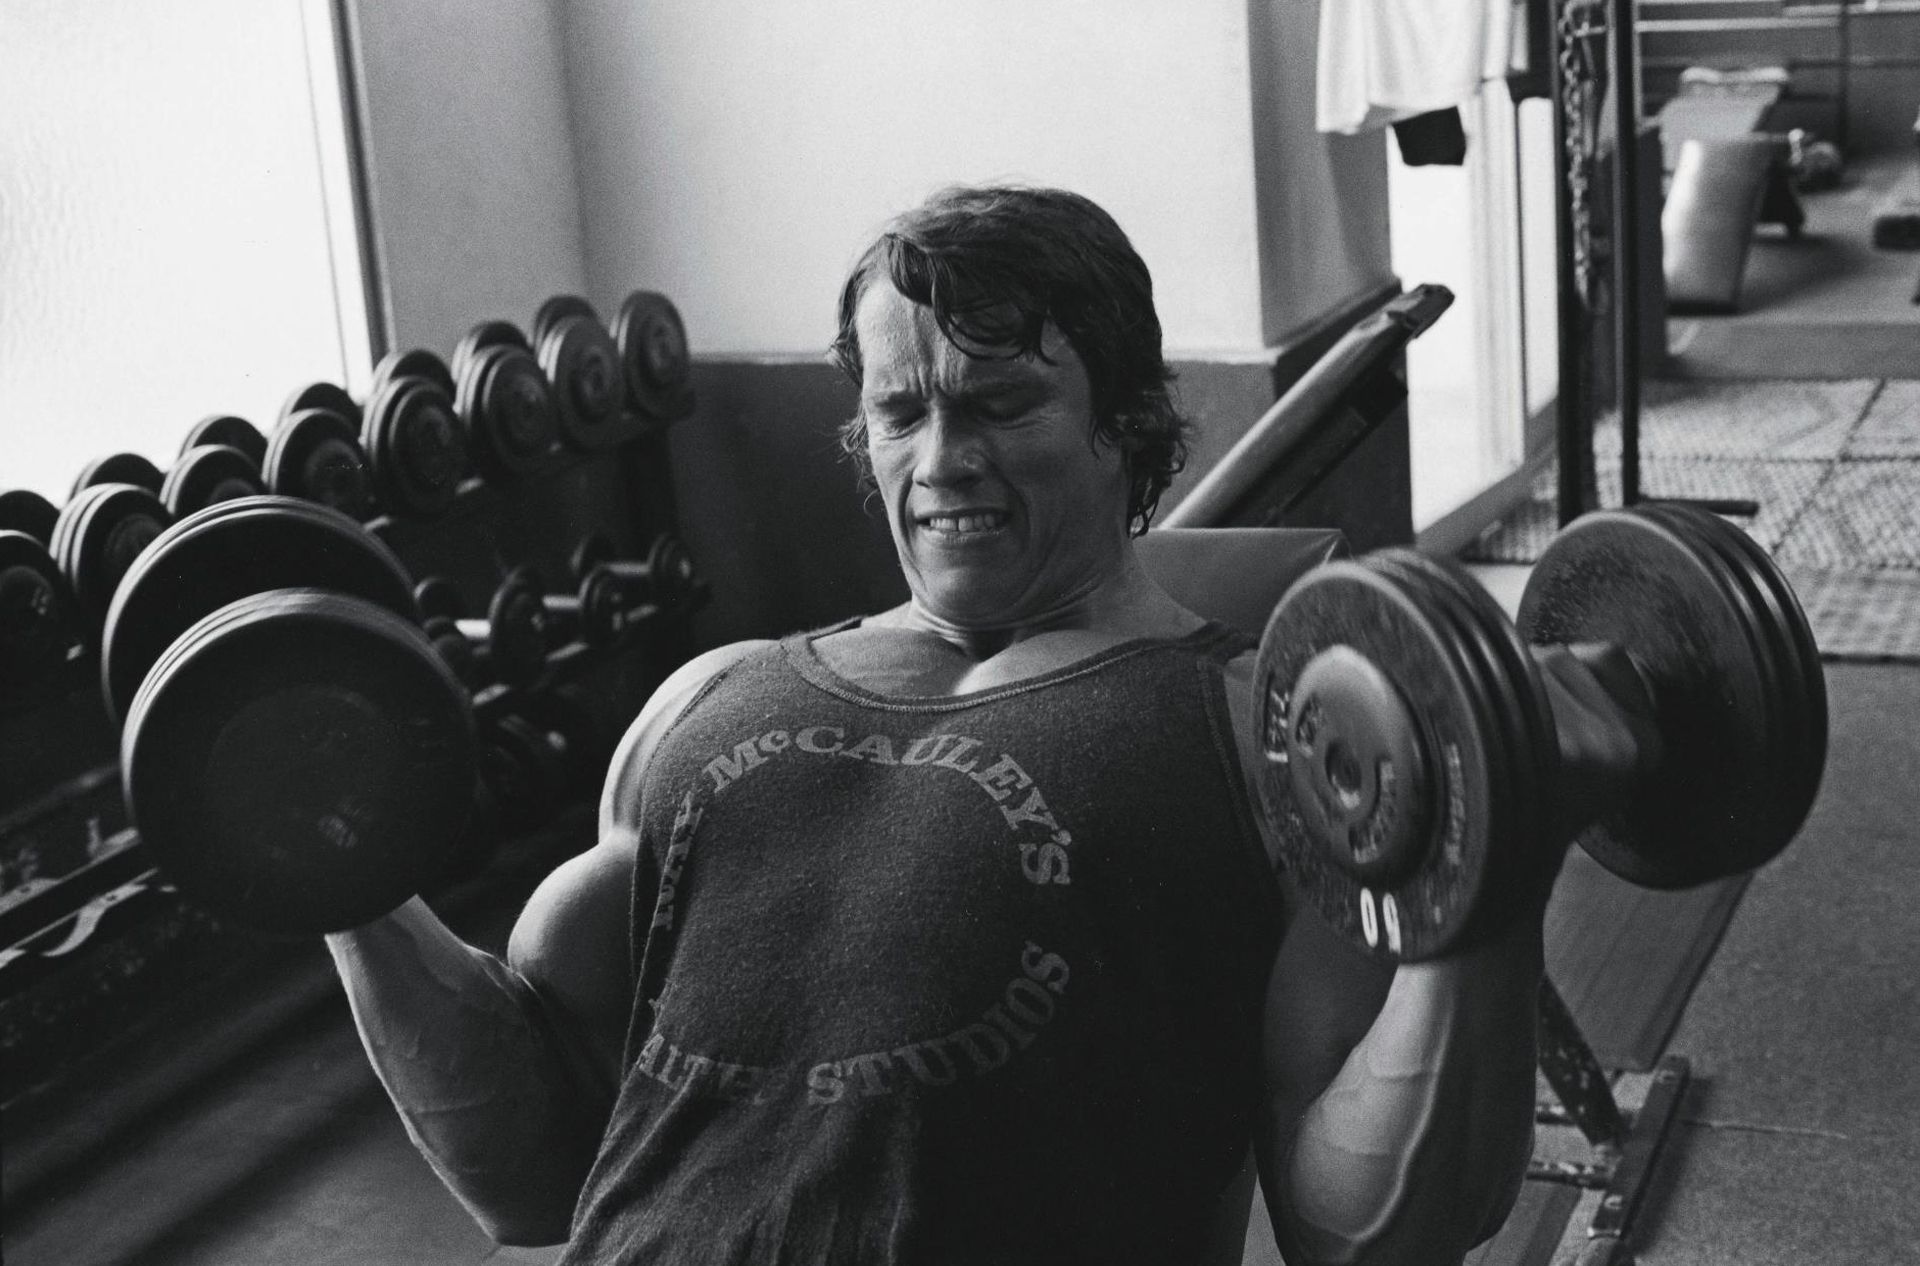 Arnold Schwarzenegger training routine gewoonvoorhem 2